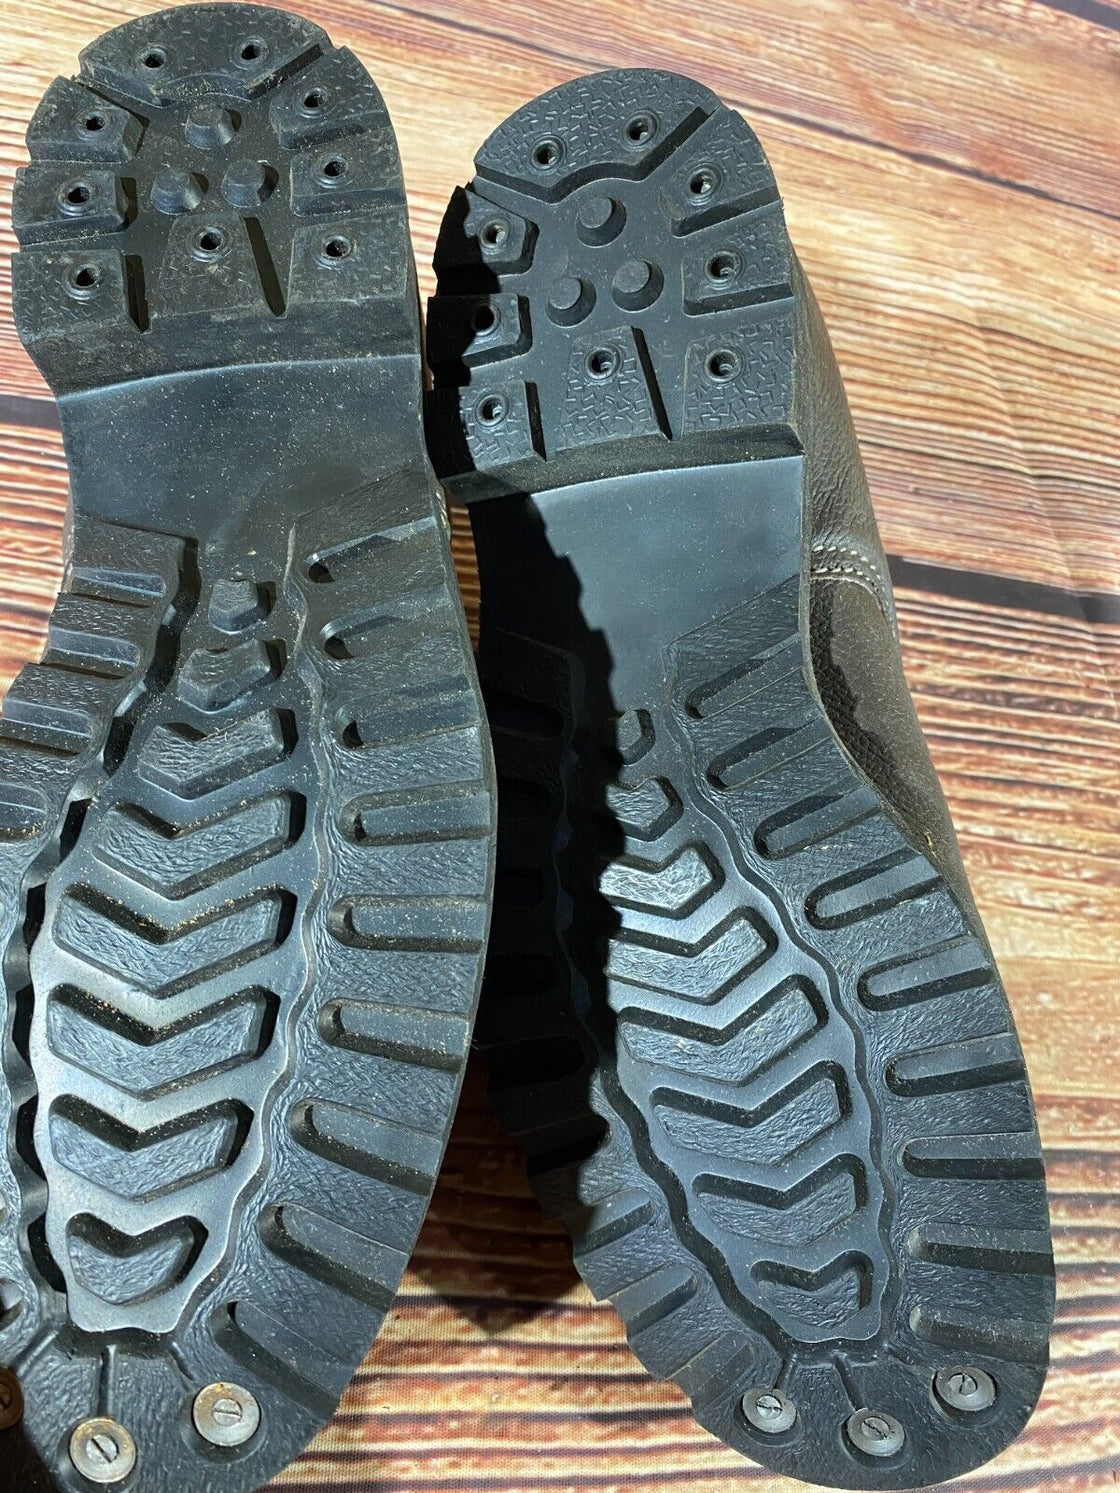 SVIT Hiking Boots Trekking Trails Casual Shoes Unisex Size EU44, US10, UK9